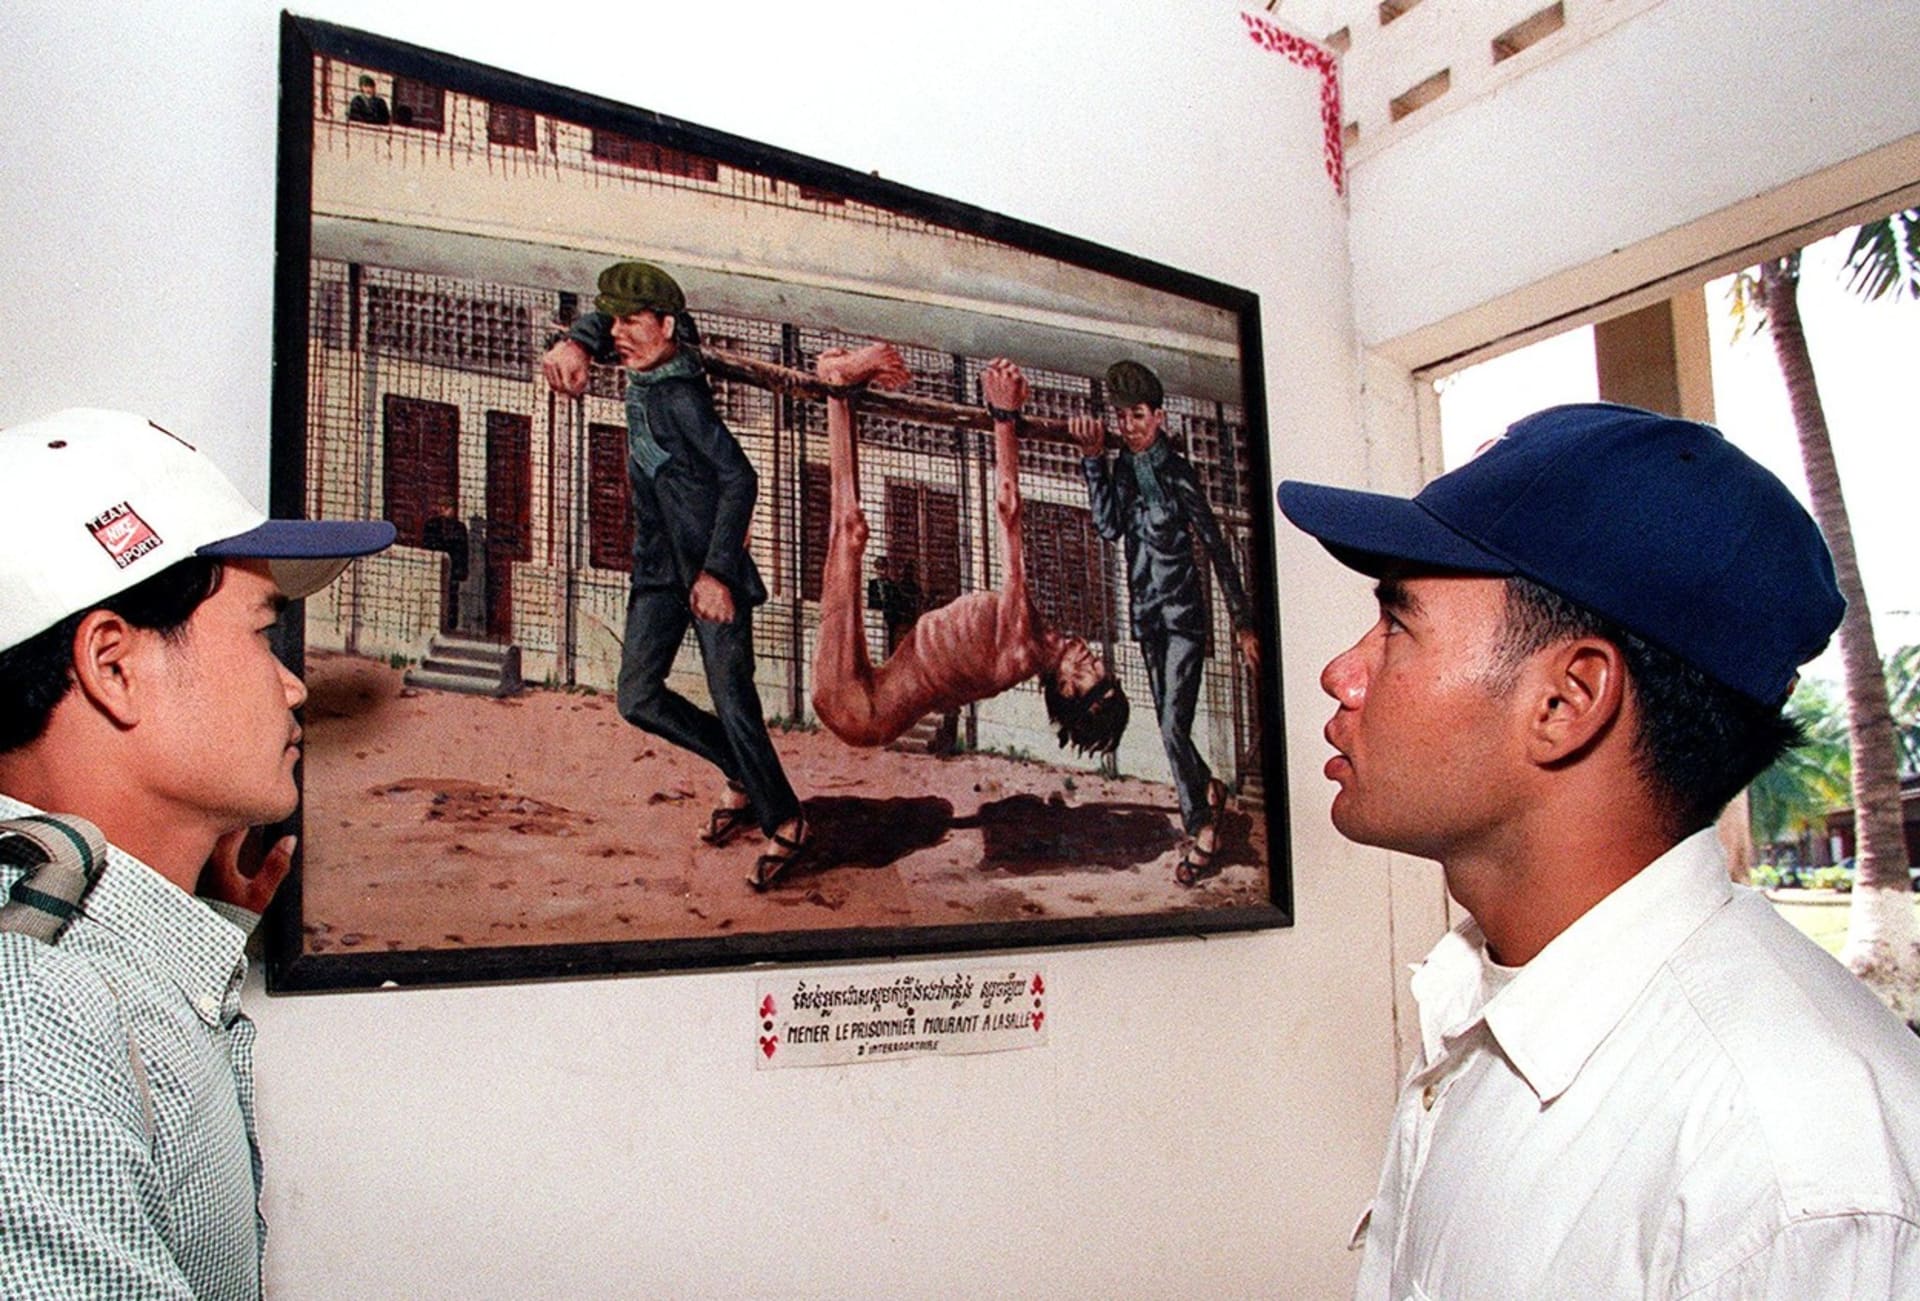 Vyobrazená scéna z kambodžské genocidy